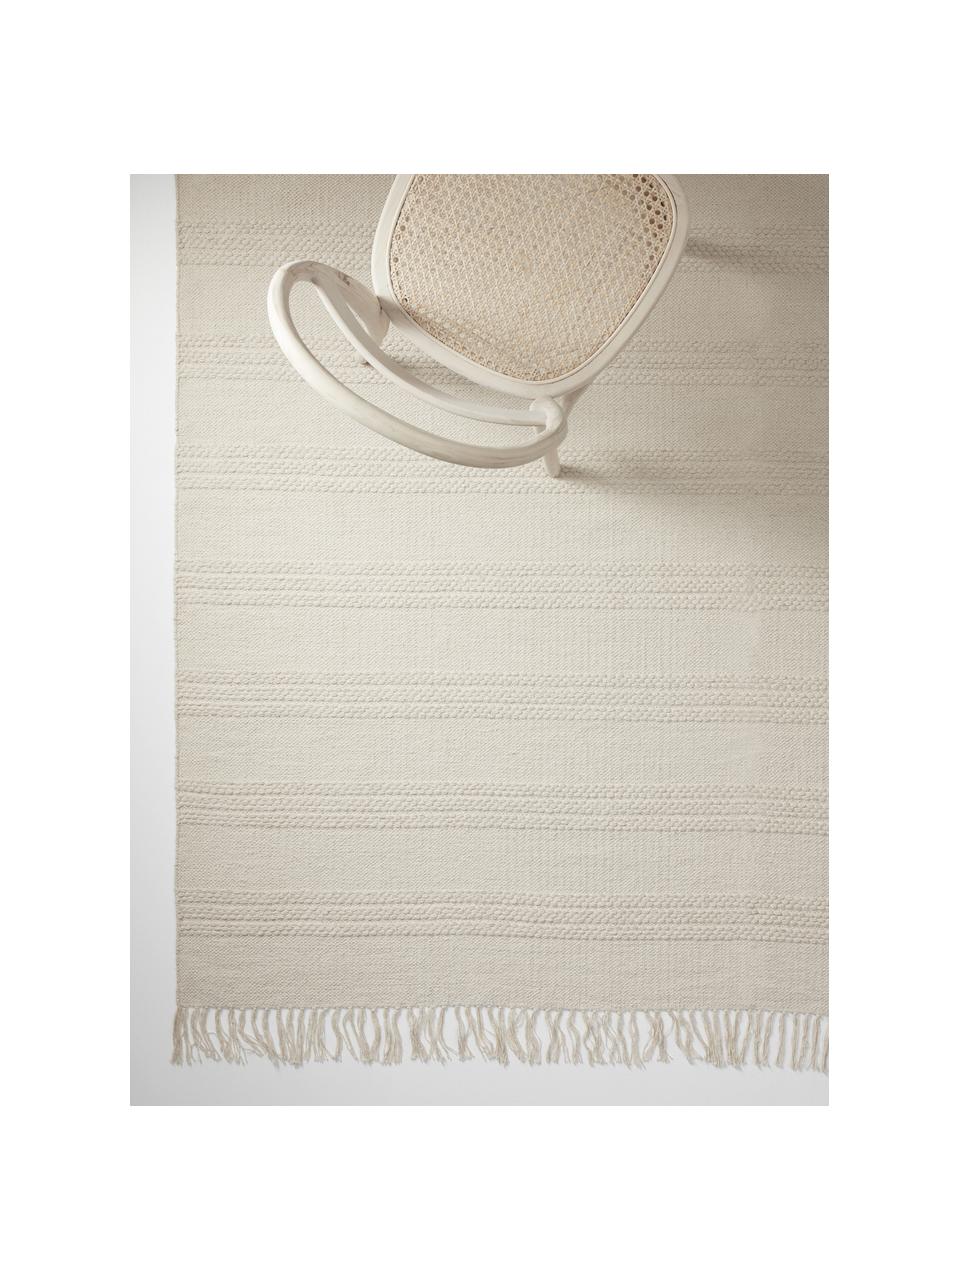 Bavlněný koberec se strukturou tkaných pruhů a třásněmi Tanya, Přírodní bílá